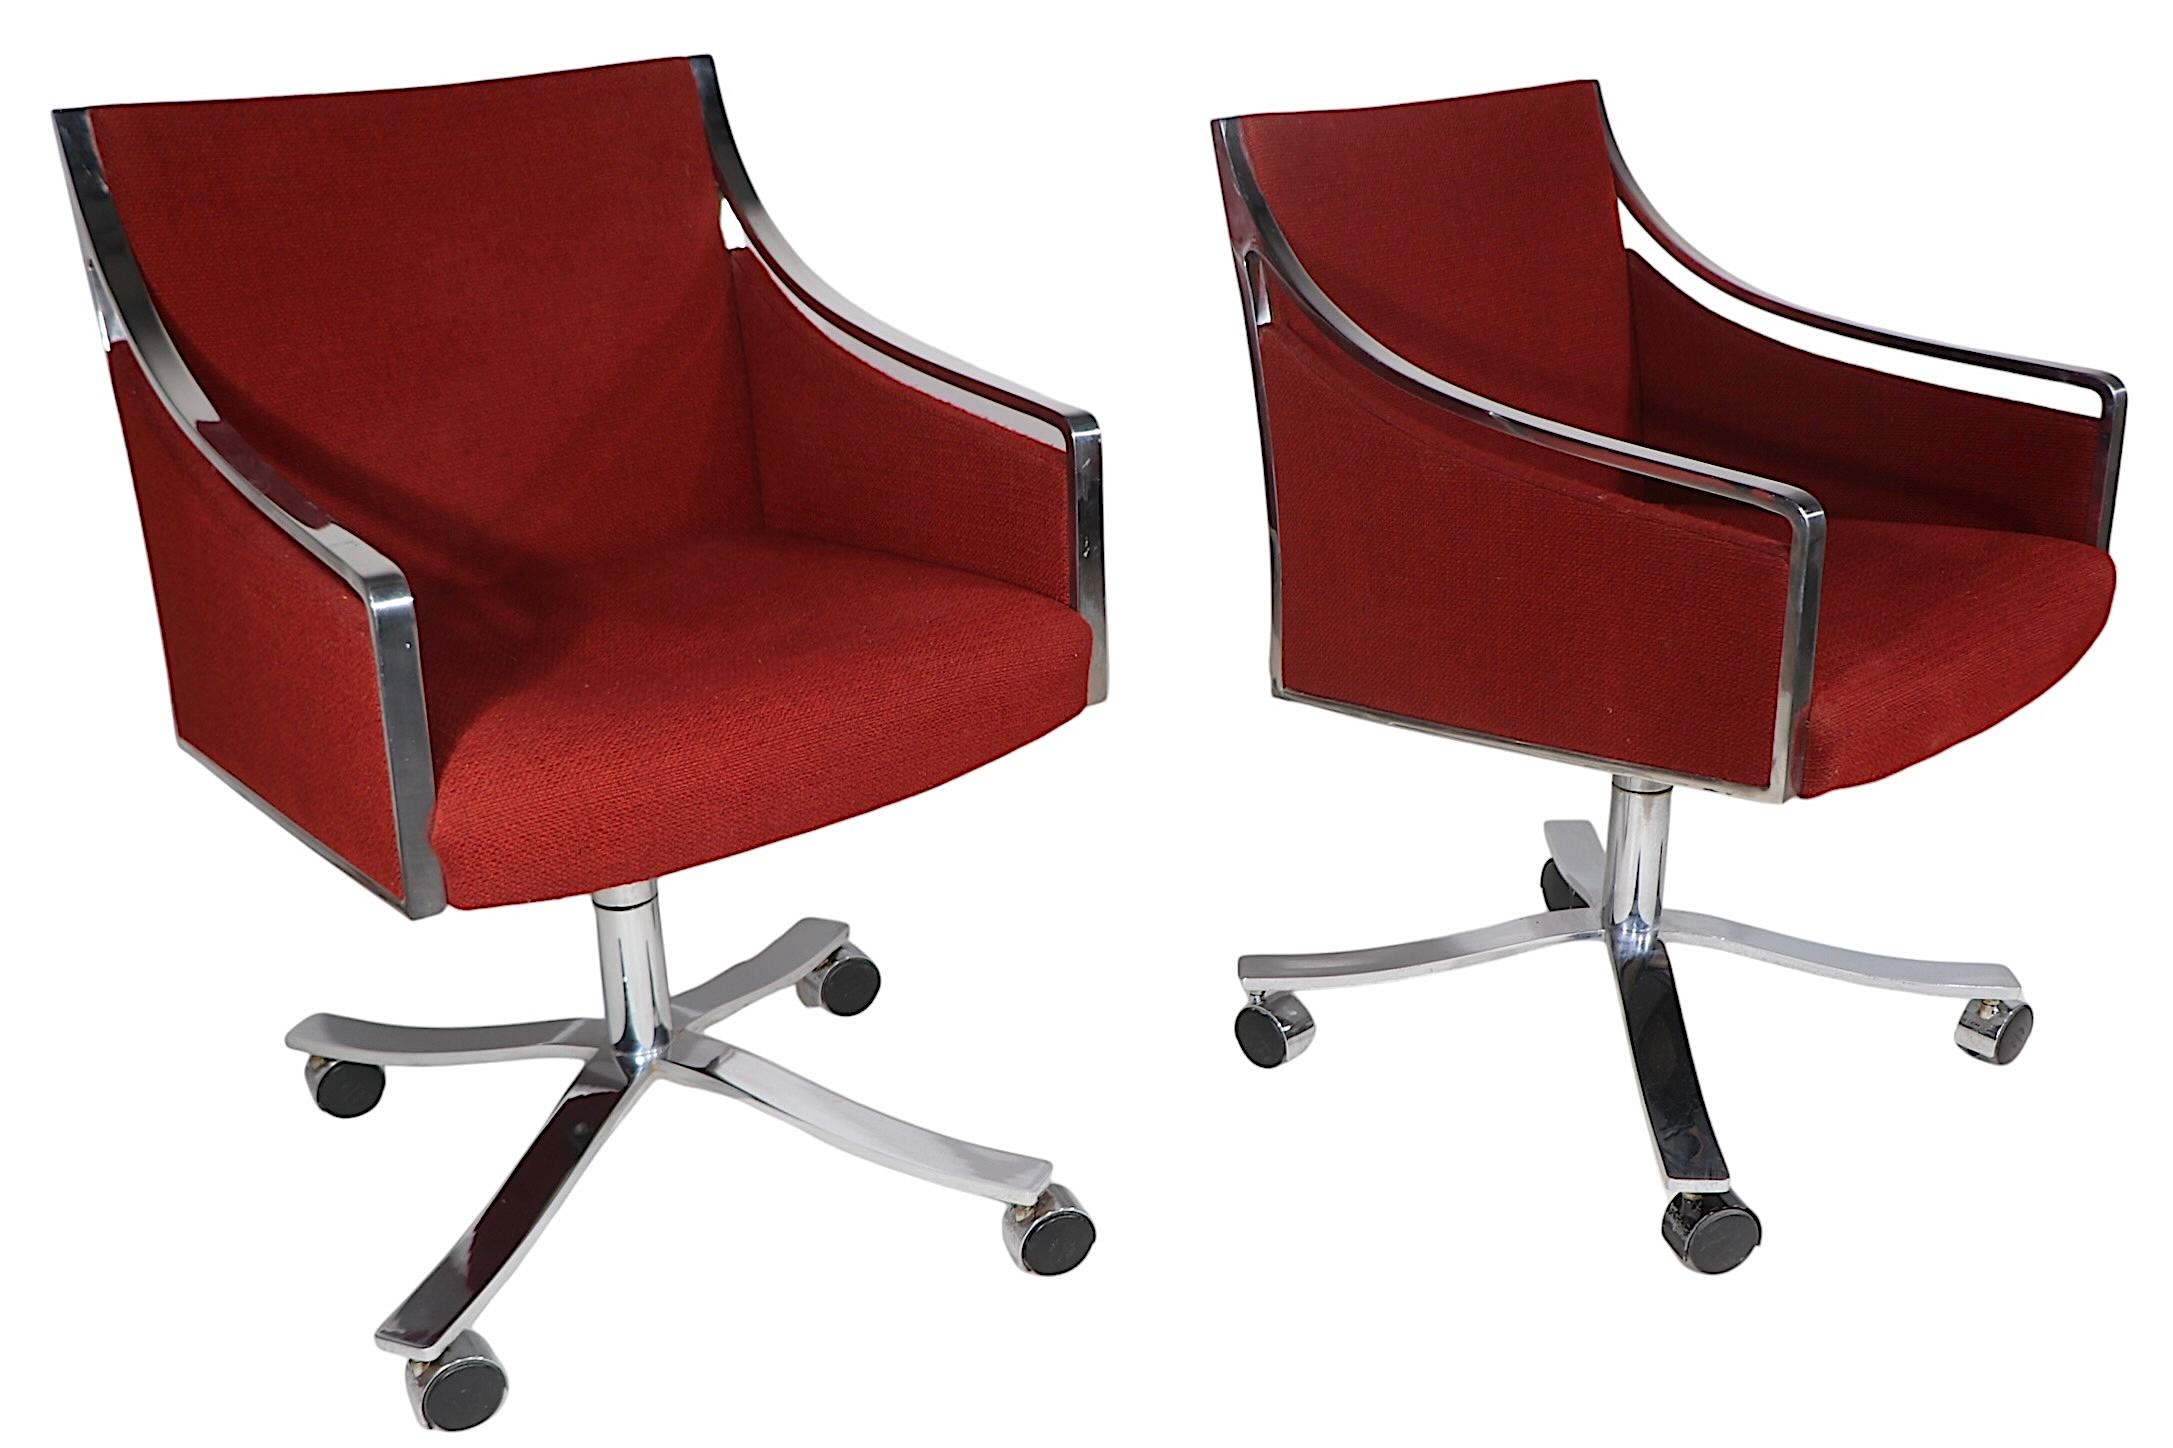 Hochwertige Schreibtisch-Drehstühle, entworfen von Bert England für Stow Davis, ca. 1970. Die Stühle sind mit schweren, glänzenden Stahlrahmen, Untergestellen und Beinen ausgestattet und haben original gepolsterte Rückenlehnen und Sitze. Die Stühle